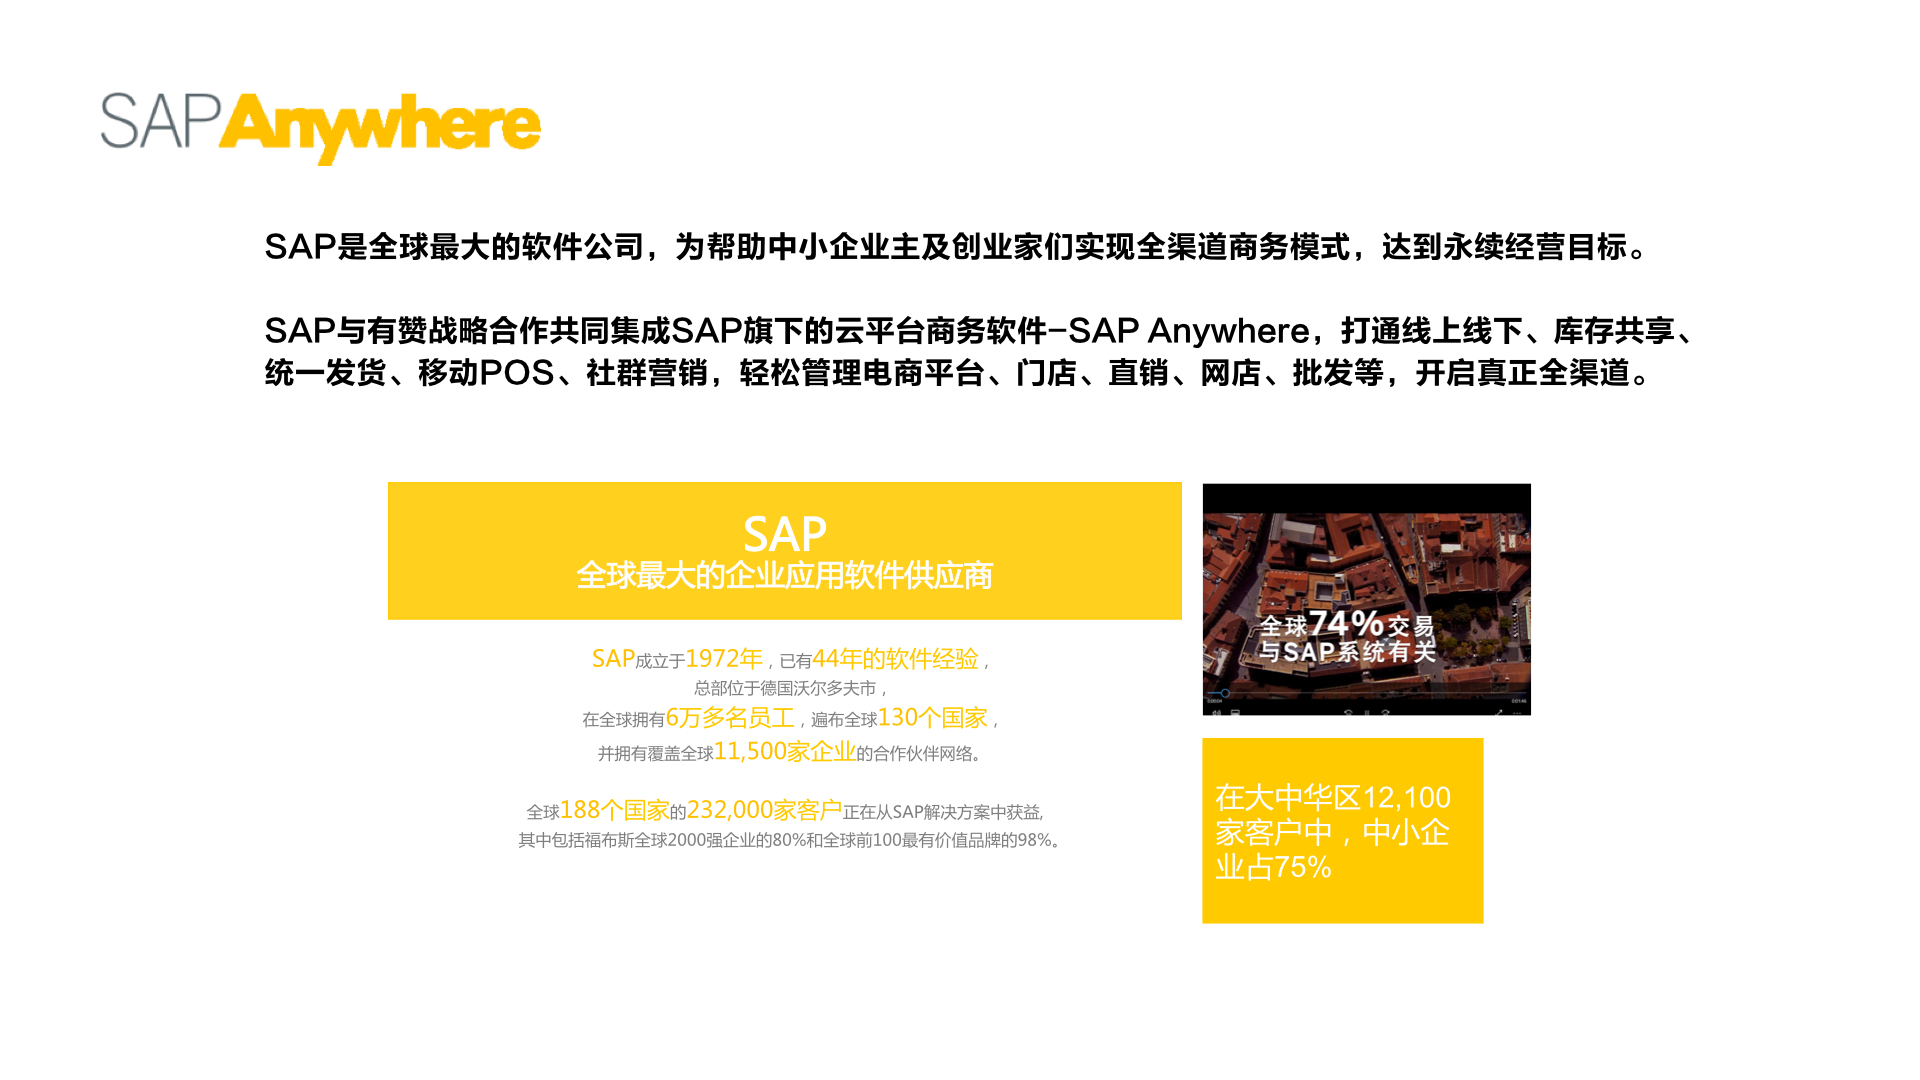 有赞&amp;SAP宣传9pdf.003.jpeg